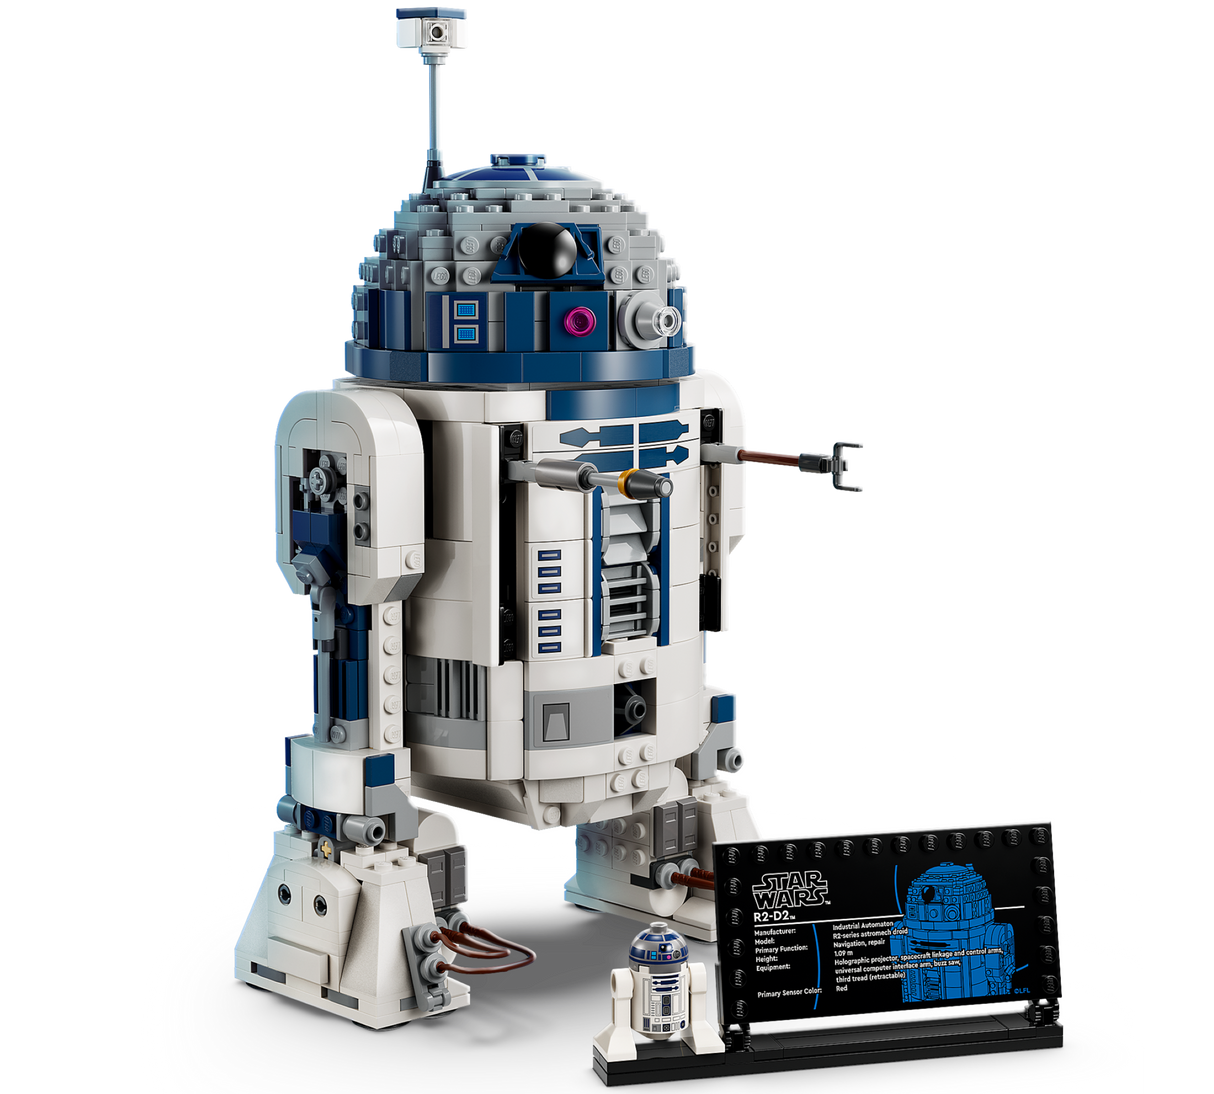 LEGO 75379 Star Wars: R2-D2 - Hobbytech Toys